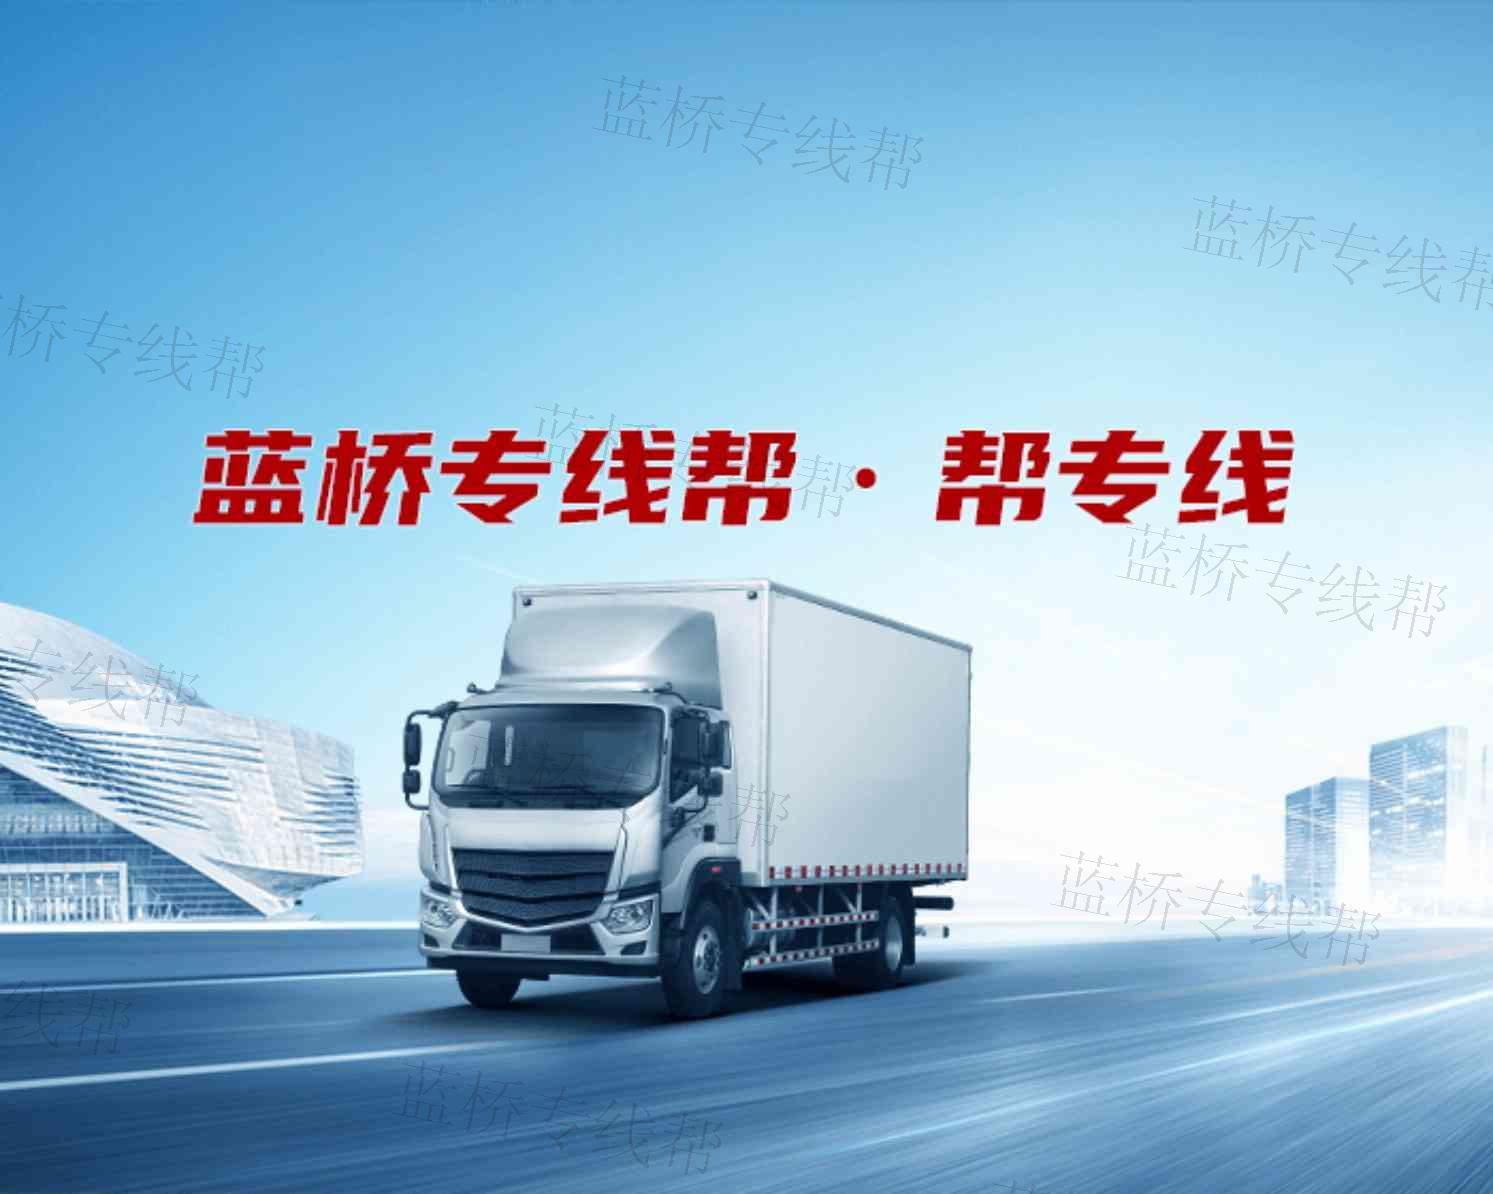 北京新发通货运有限责任公司